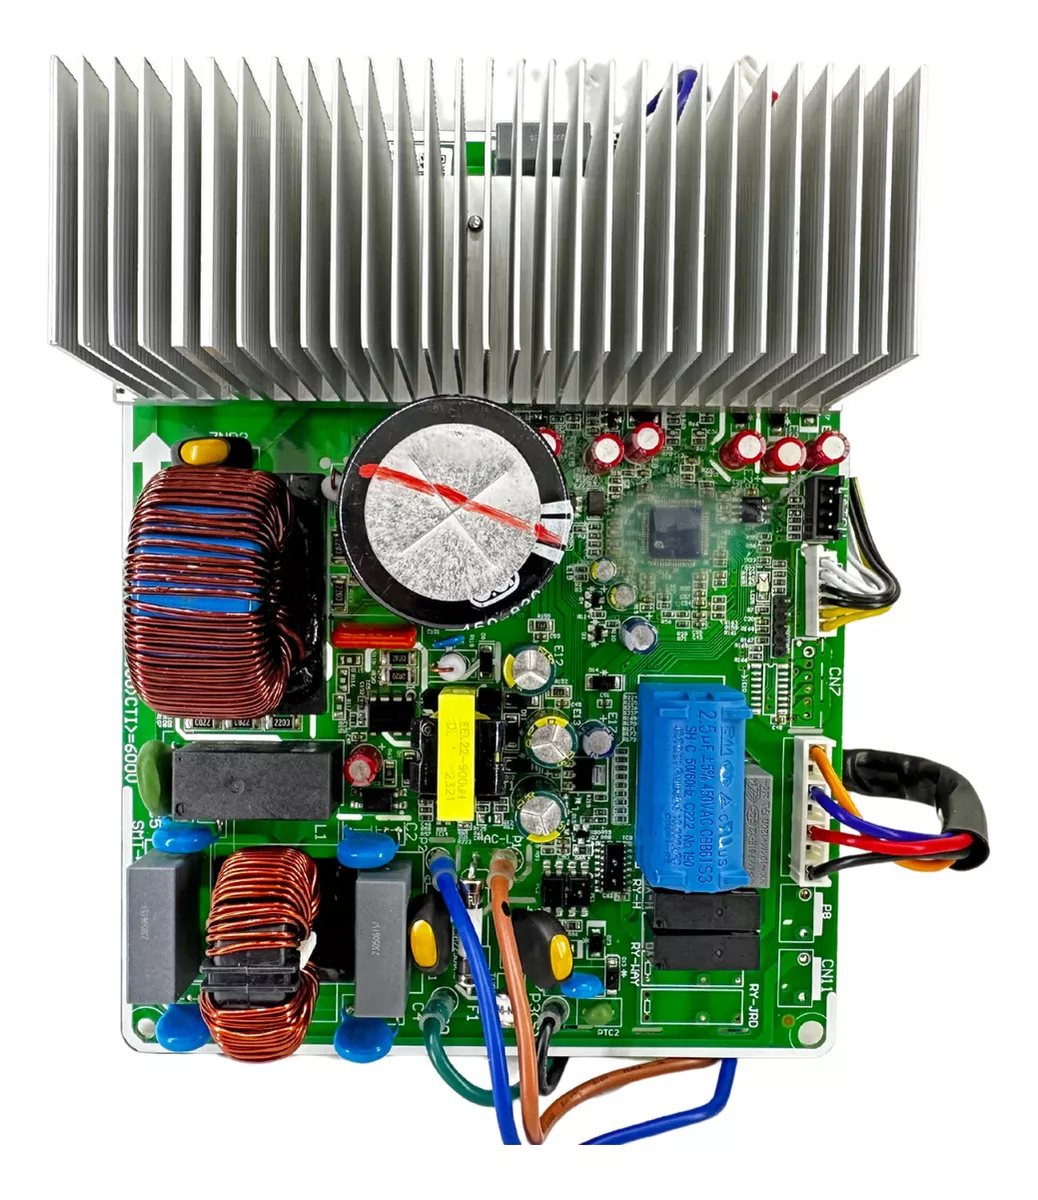 Terceira imagem para pesquisa de placa eletronica ar condicionado philco inverter